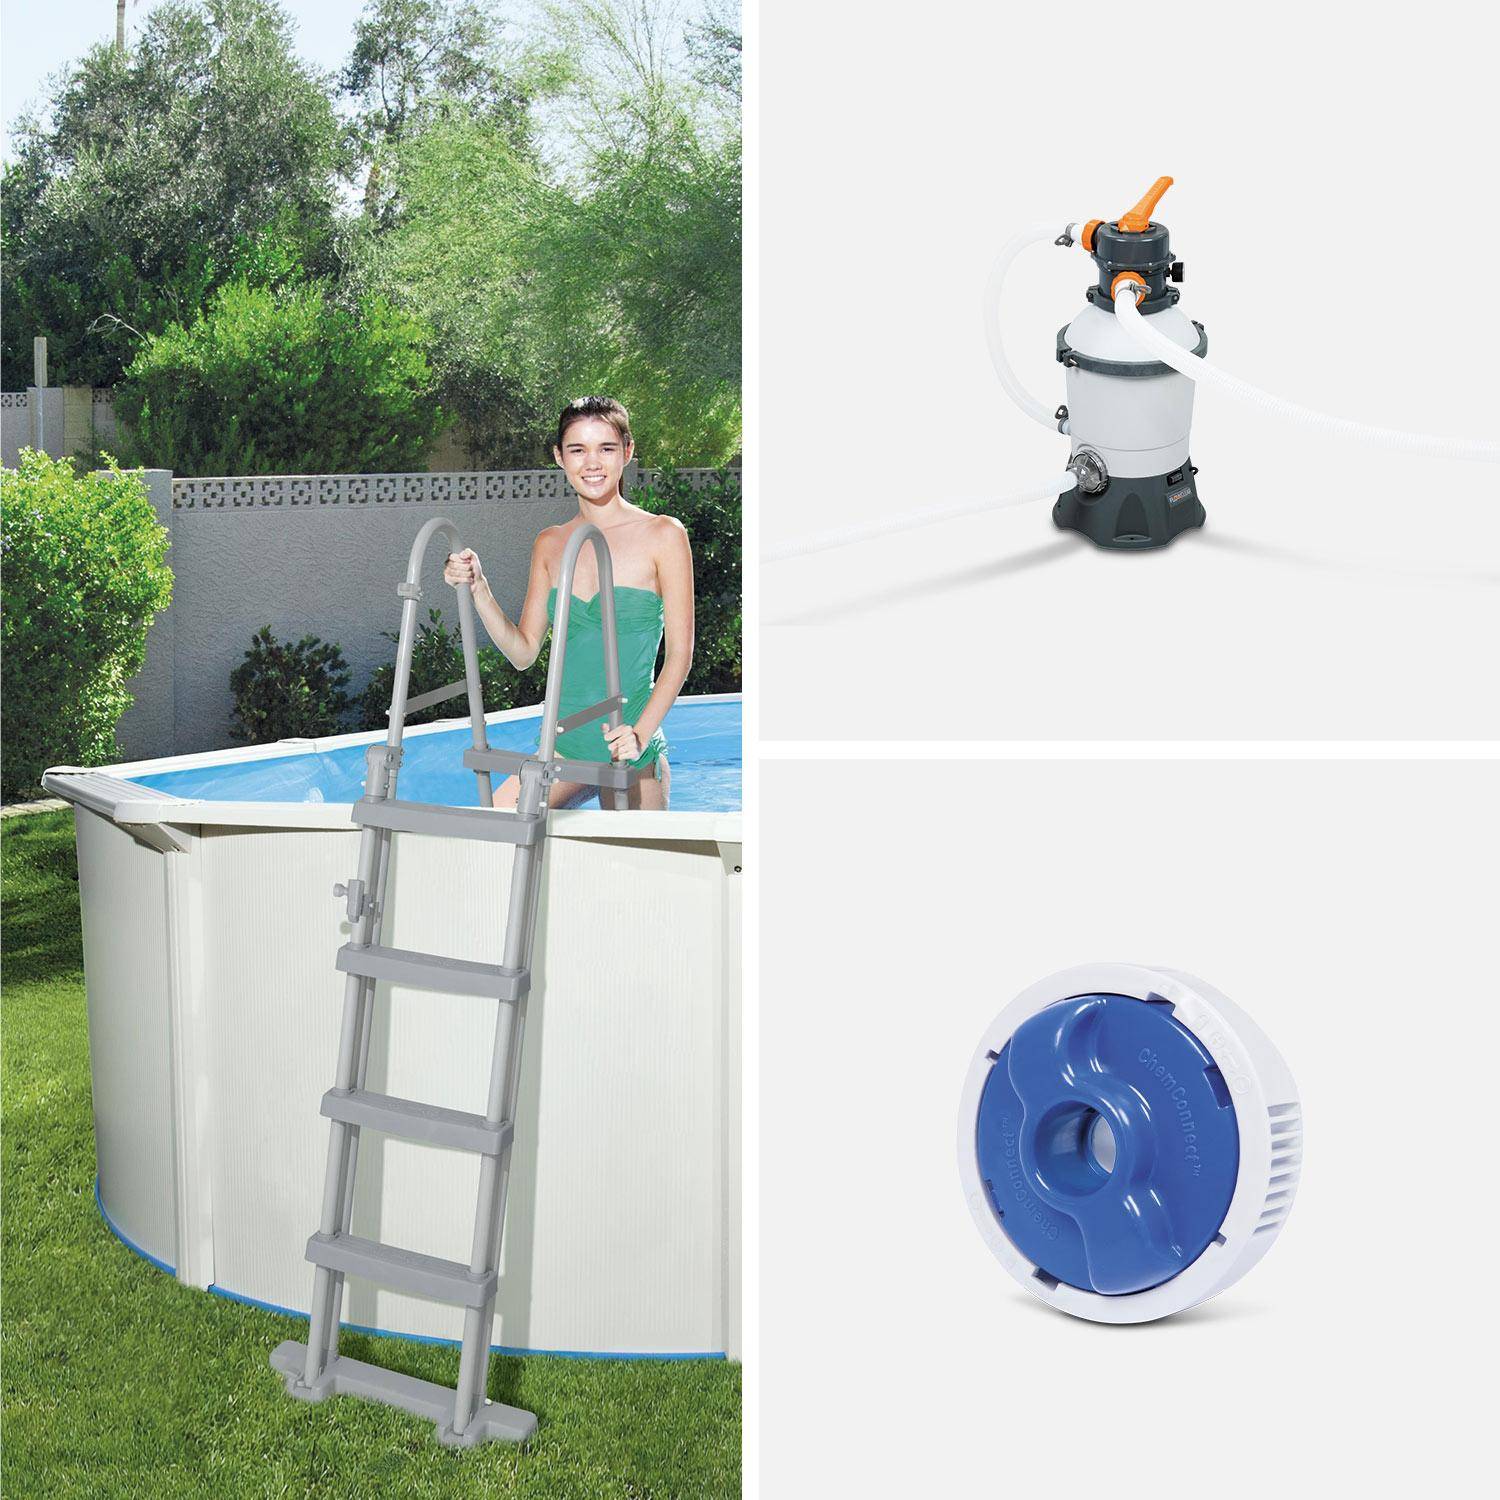 Kit de piscina Torrens de aço inoxidável, redondo Ø360cm, branco com filtro de areia, tapete de chão, cobertura e escada Photo5